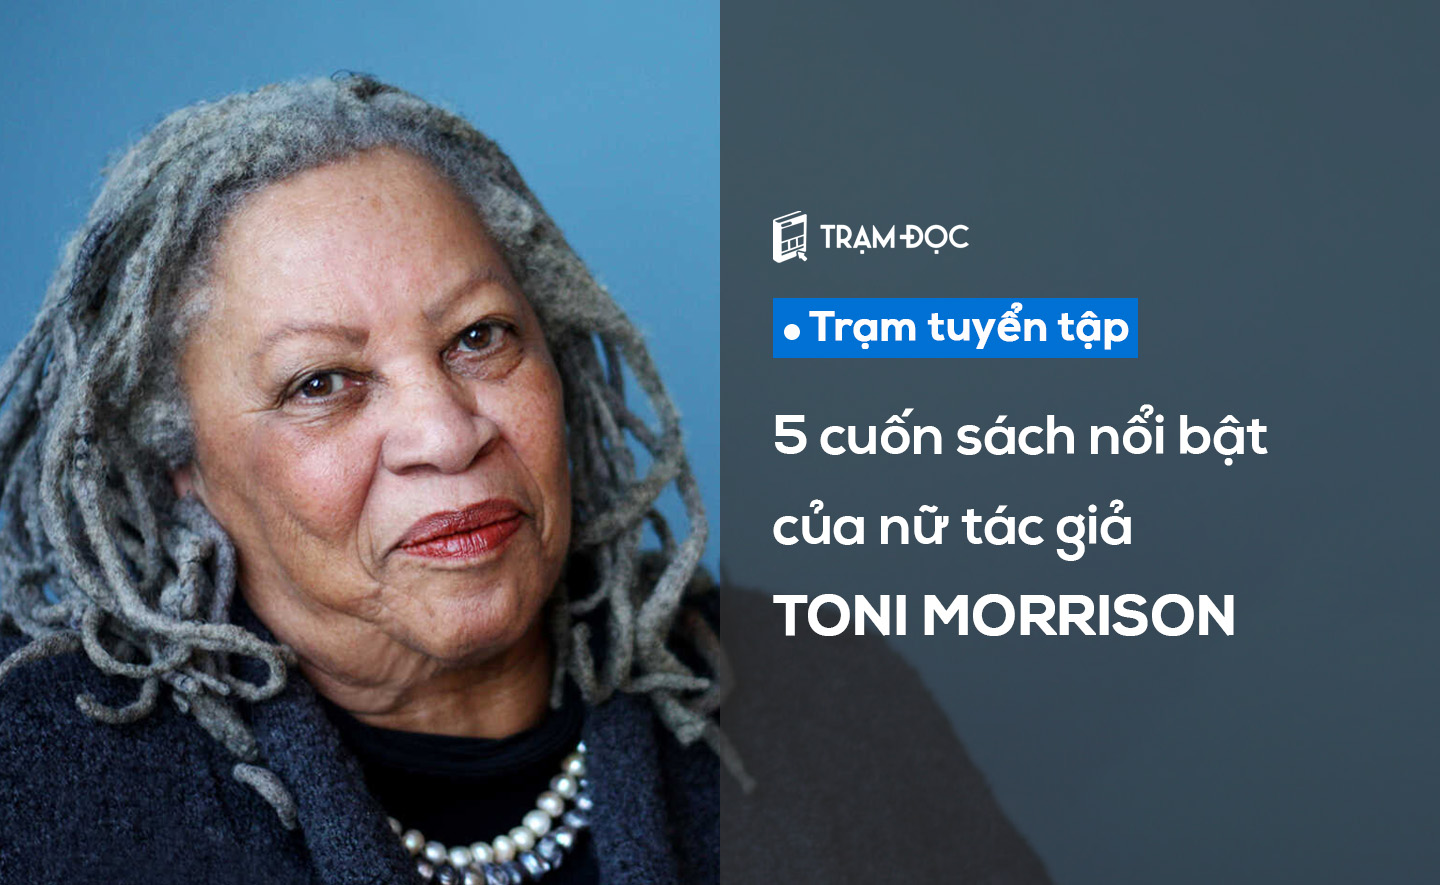 5 cuốn sách nổi bật của Toni Morrison 